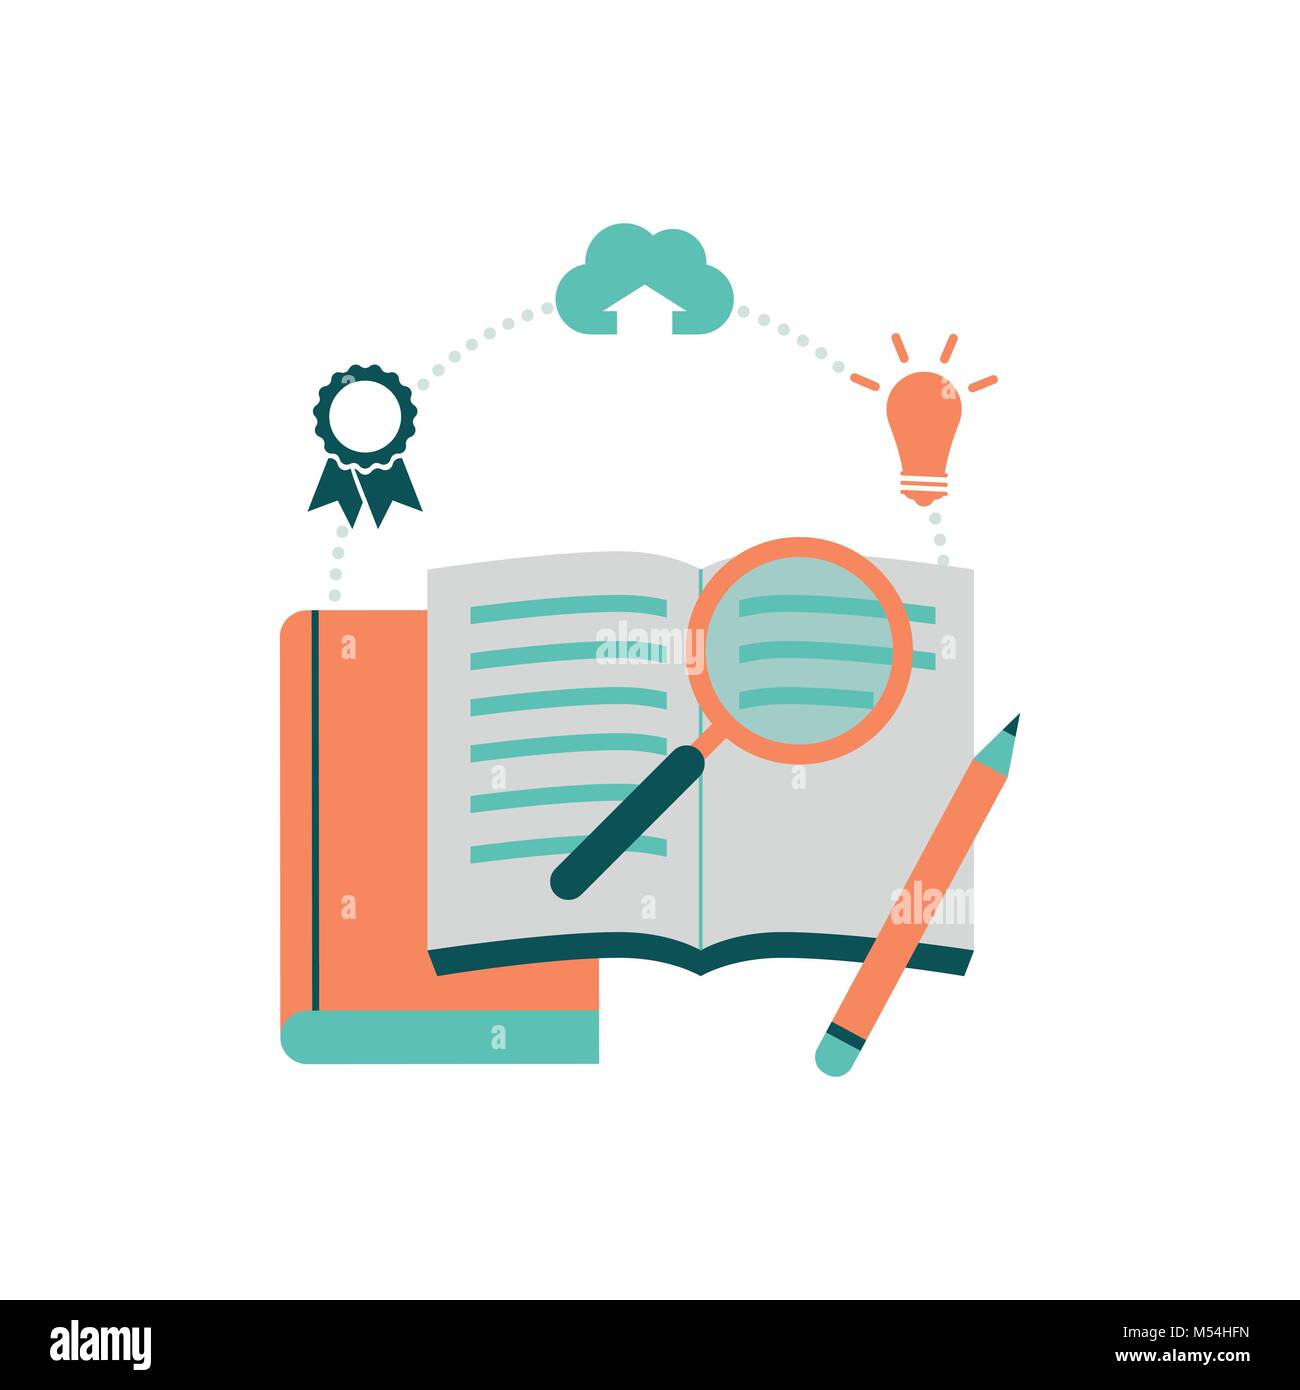 Offenes Buch und Lupe: Lernen und Bildung Konzept Stock Vektor